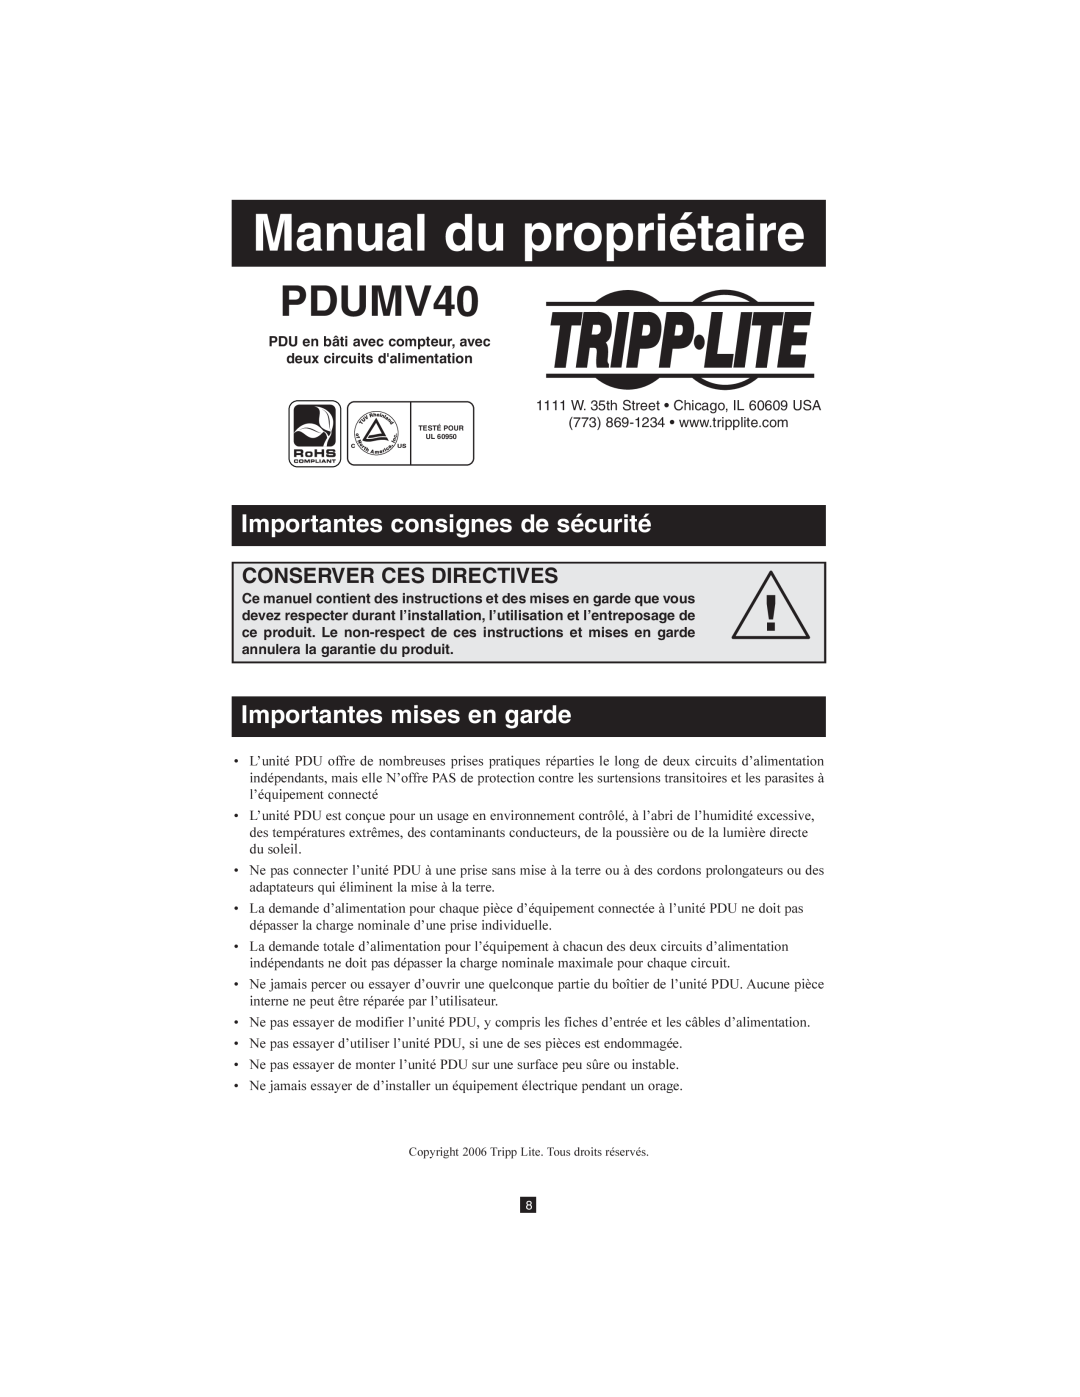 Tripp Lite PDUMV40 owner manual Manual du propriétaire, Importantes consignes de sécurité, Importantes mises en garde 